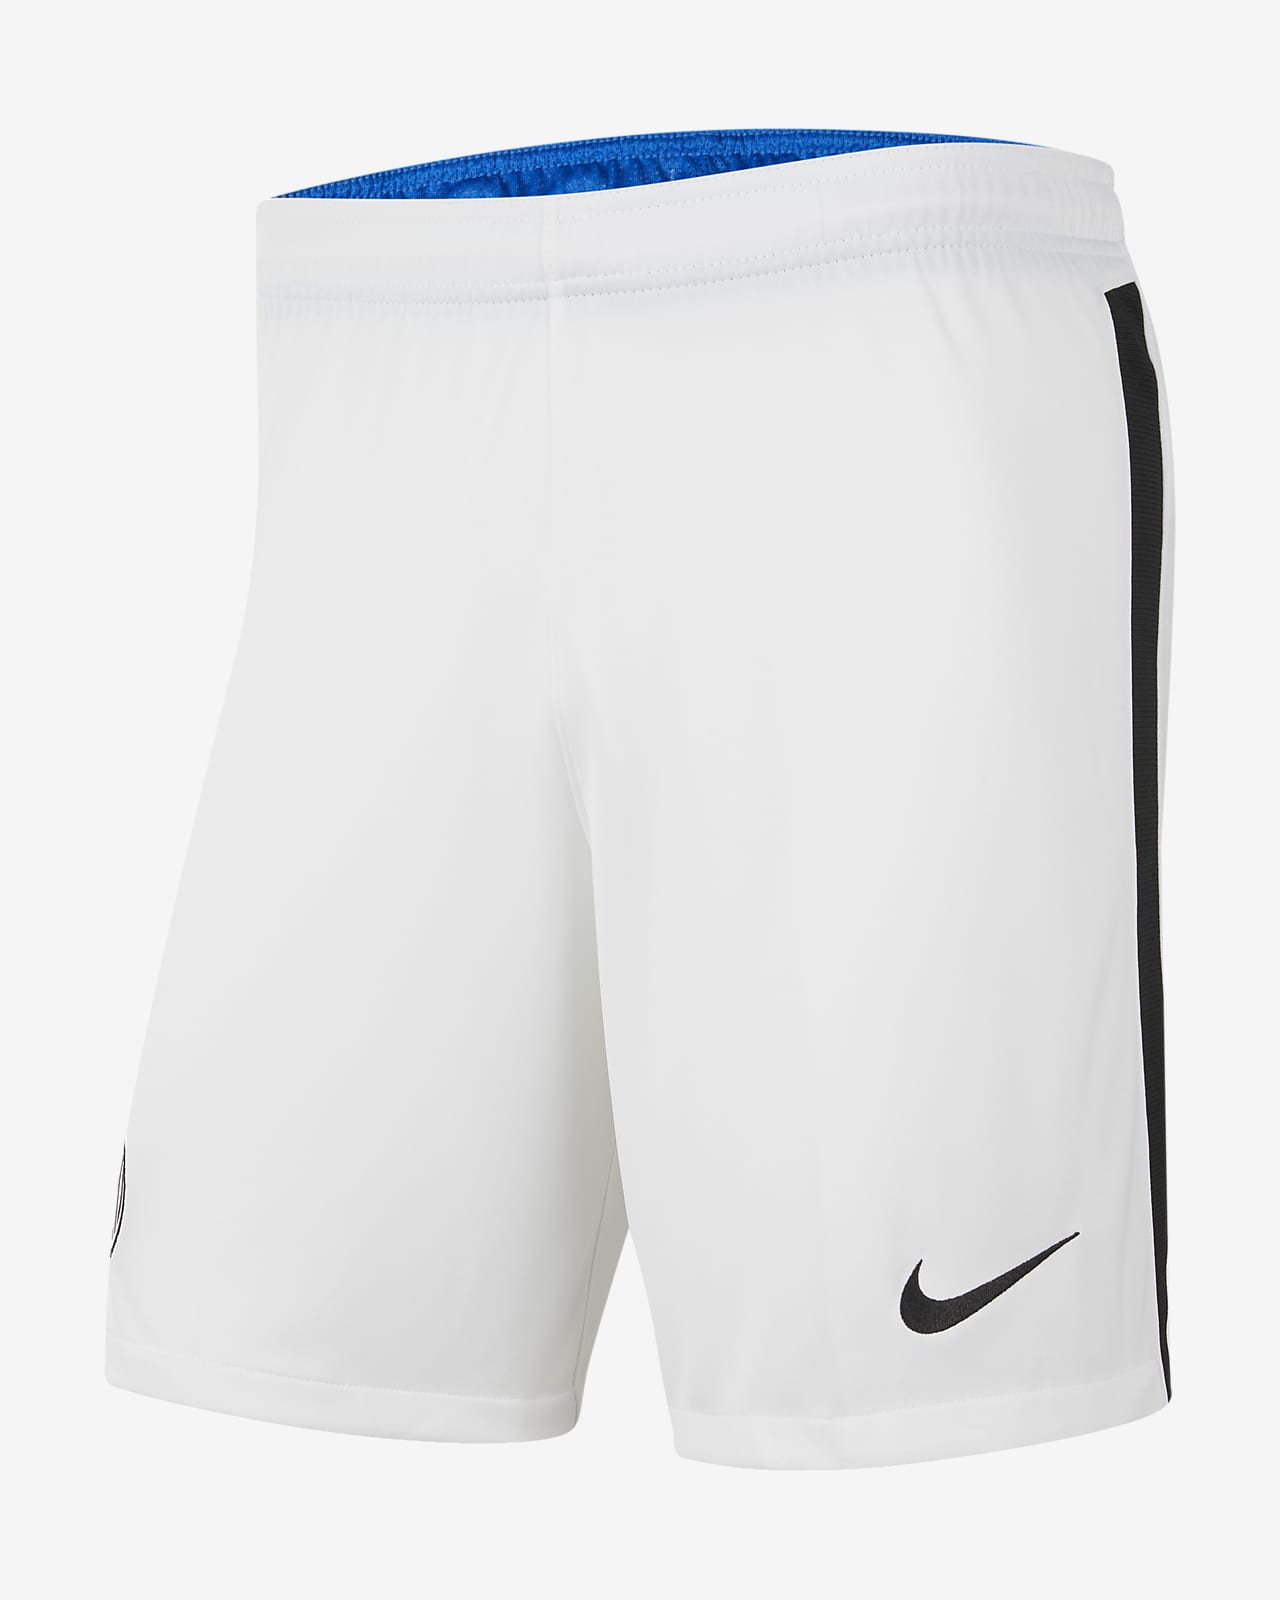 Inter Milan 2021/22 Stadium Home/Away Men's Nike Dri-FIT Football Shorts